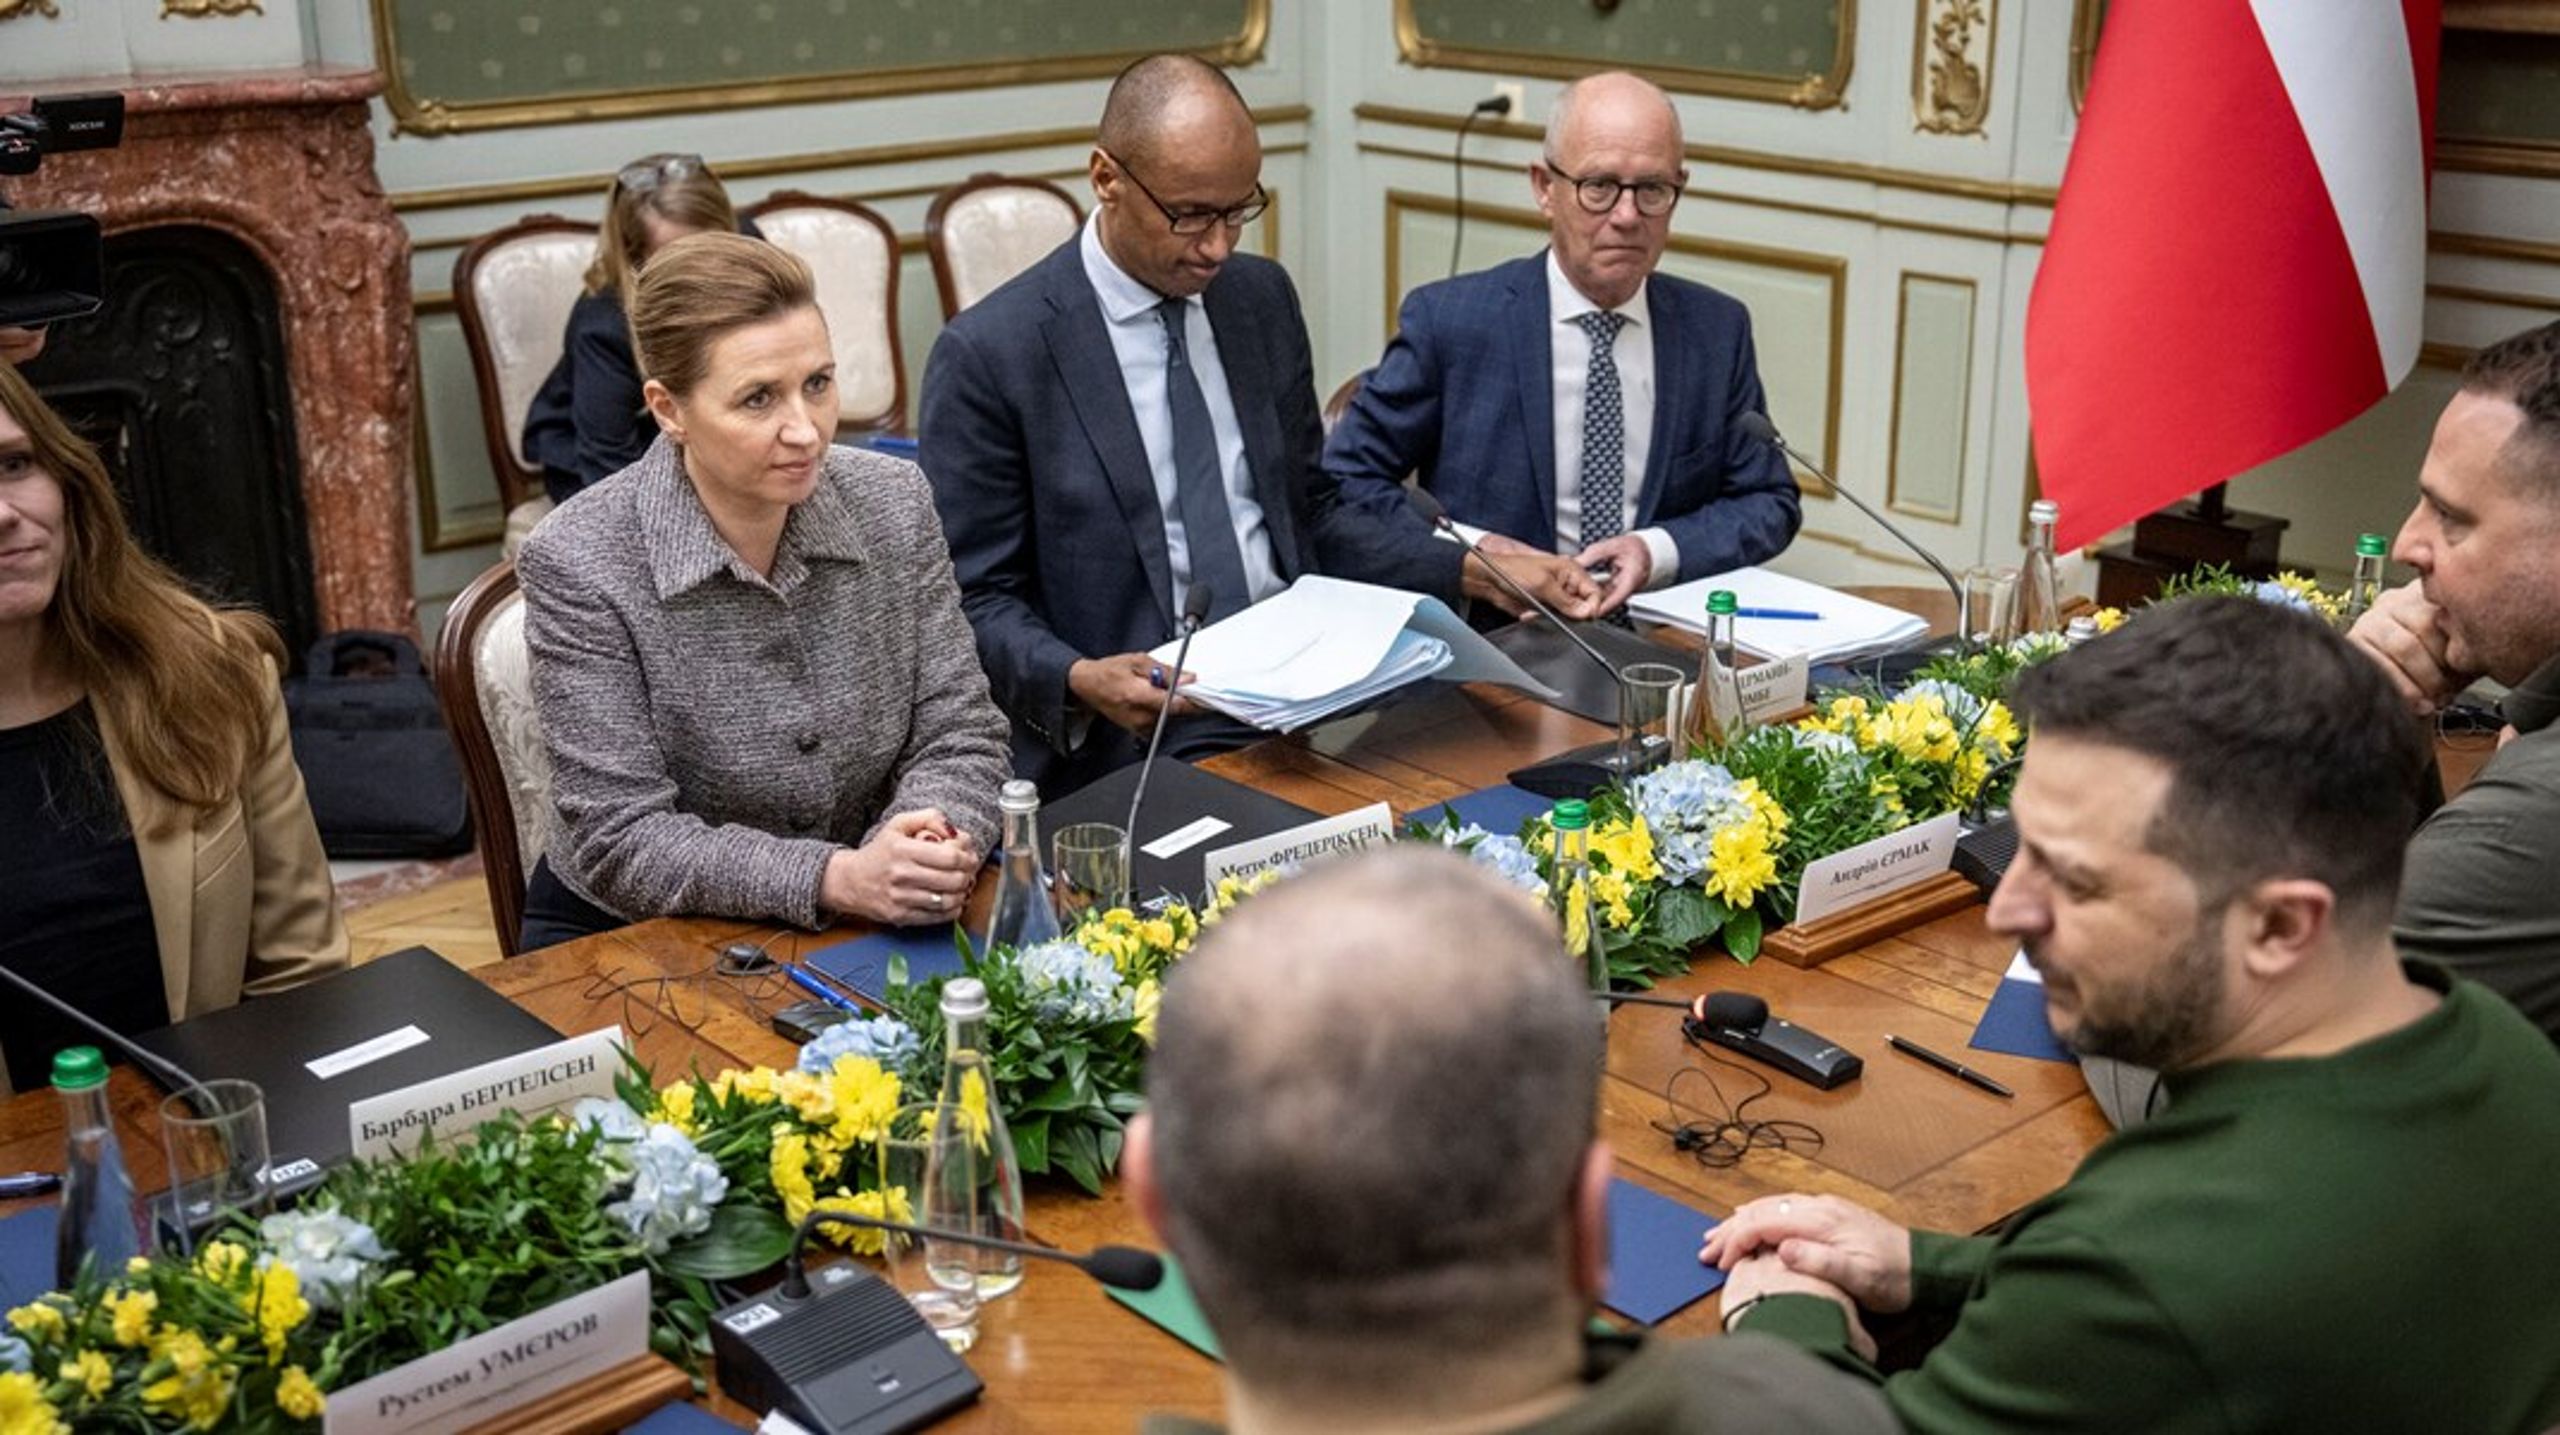 Jean Ellermann-Kingombe er manden med brillerne&nbsp;til højre for statsminister Mette Frederiksen. Billedet er fra et møde med Ukraines præsident Volodymyr Zelenskyj i Lviv i februar i&nbsp;år.